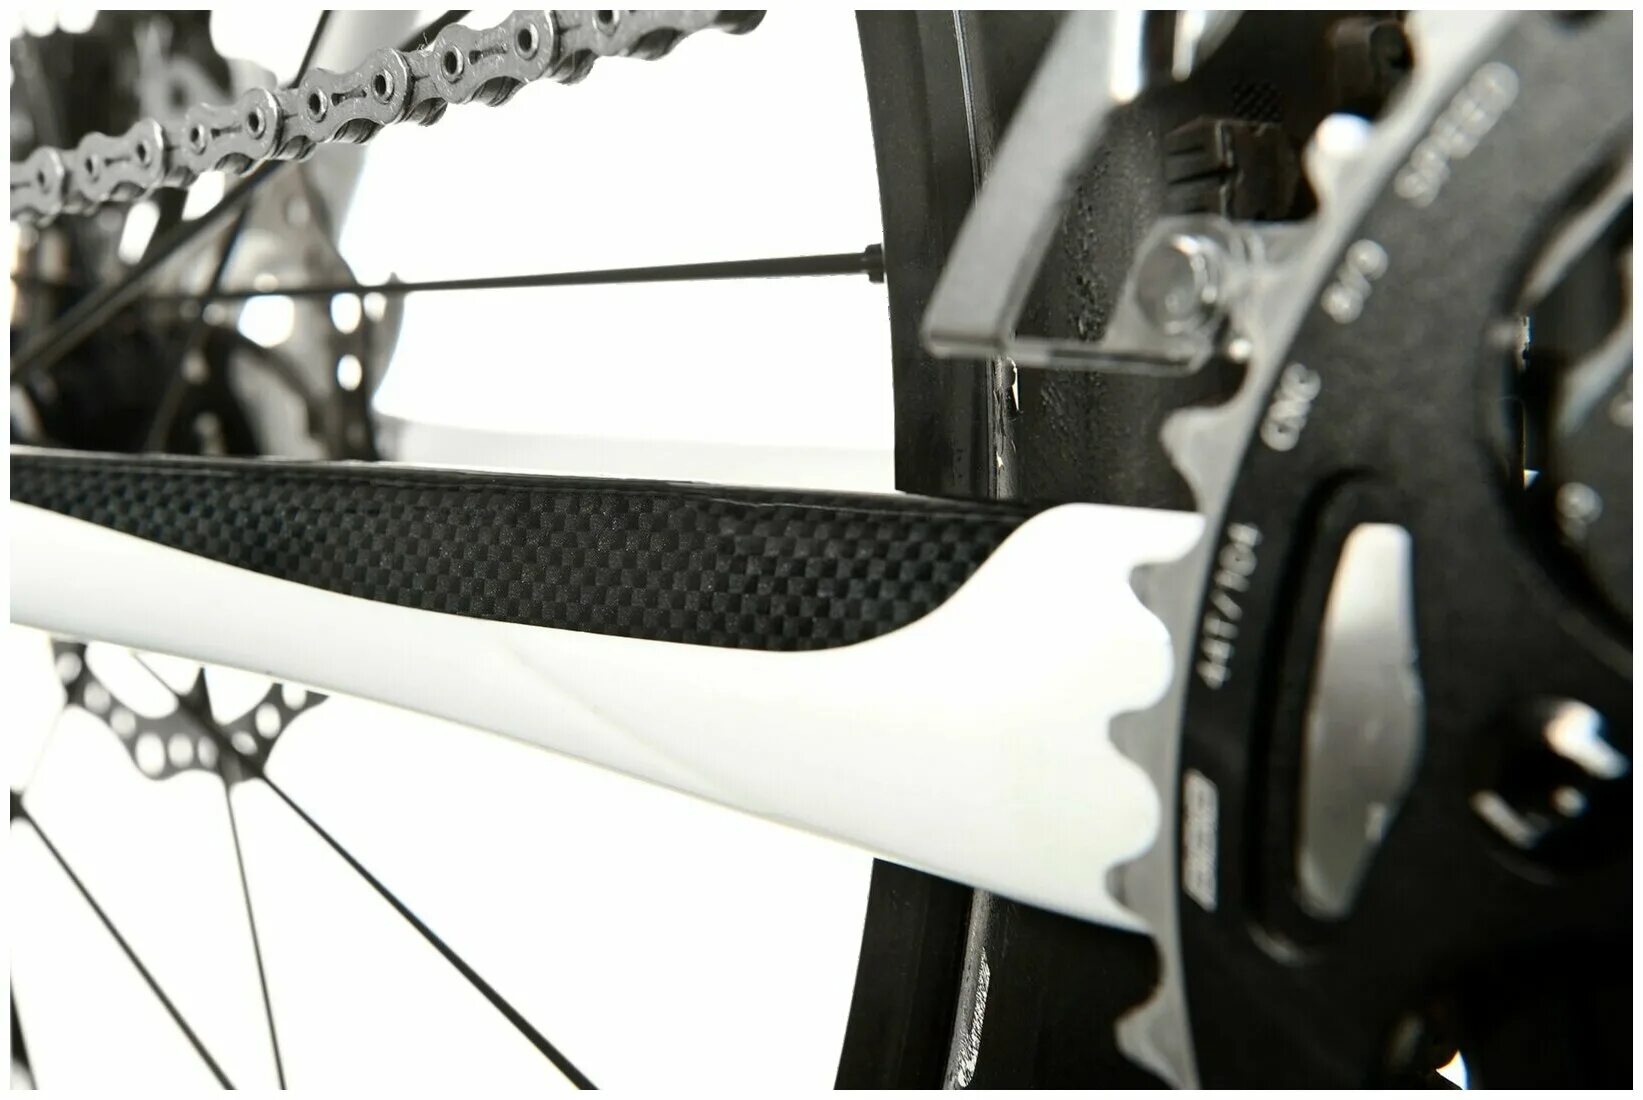 Защита рамы велосипеда. BBP-56 защита на перо BBB CARBONSKIN Set. Shimano XTR защита пера. Защита пера BBB BBP-12 STAYGUARD. Защита пера Norco.